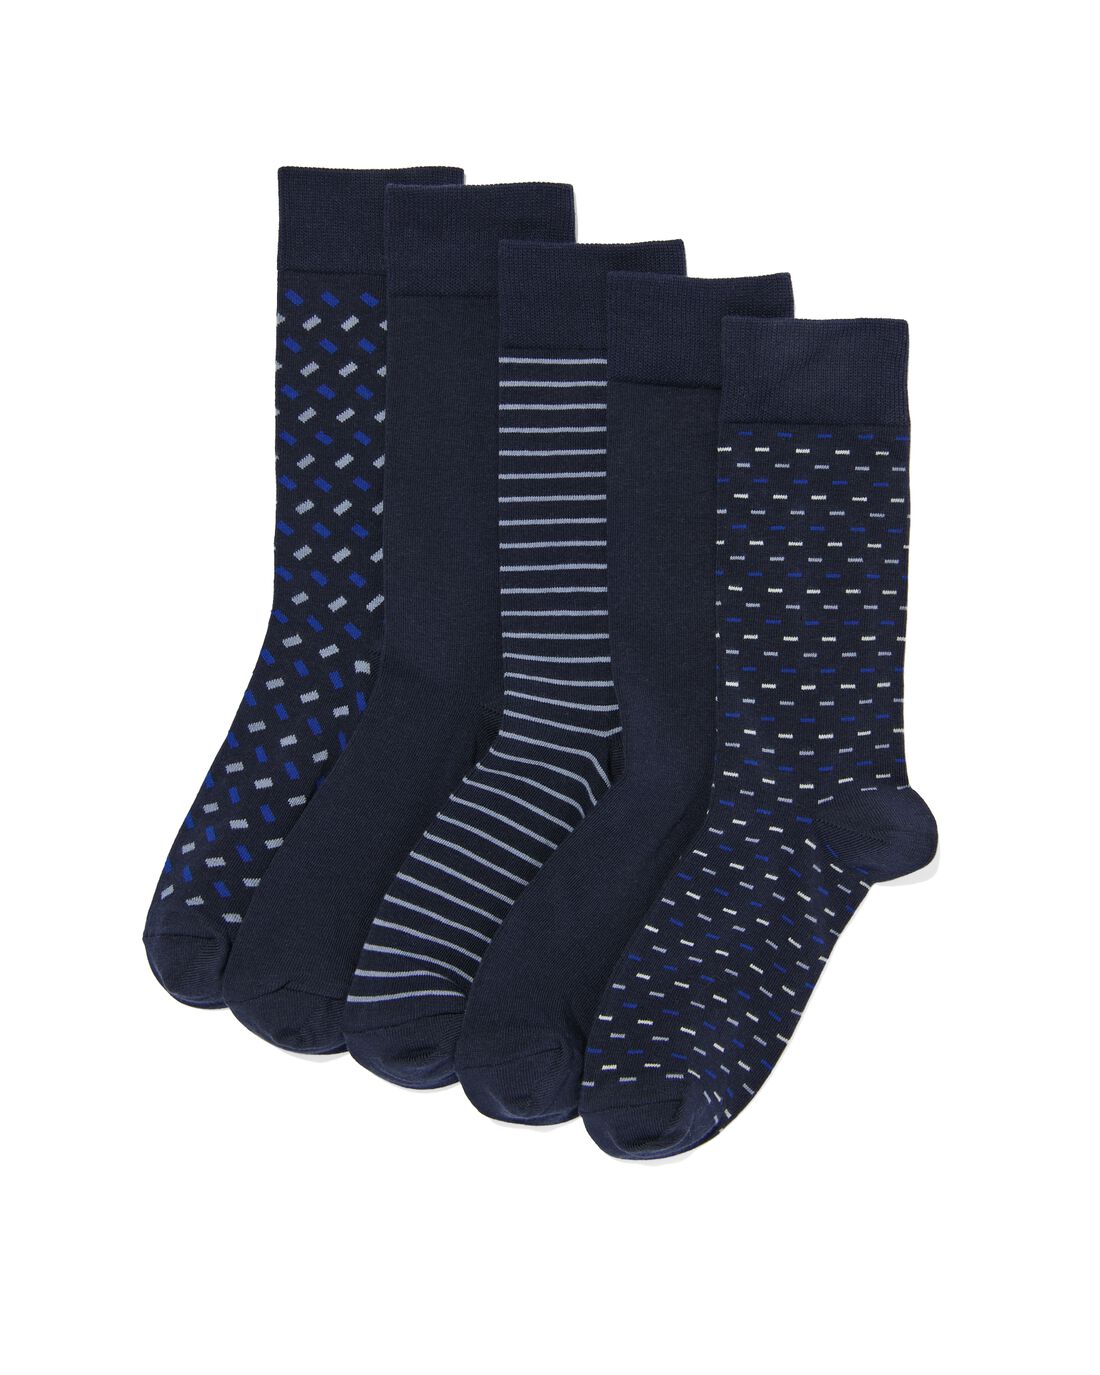 HEMA Heren Sokken Met Katoen Grafisch 5 Paar Donkerblauw (donkerblauw)